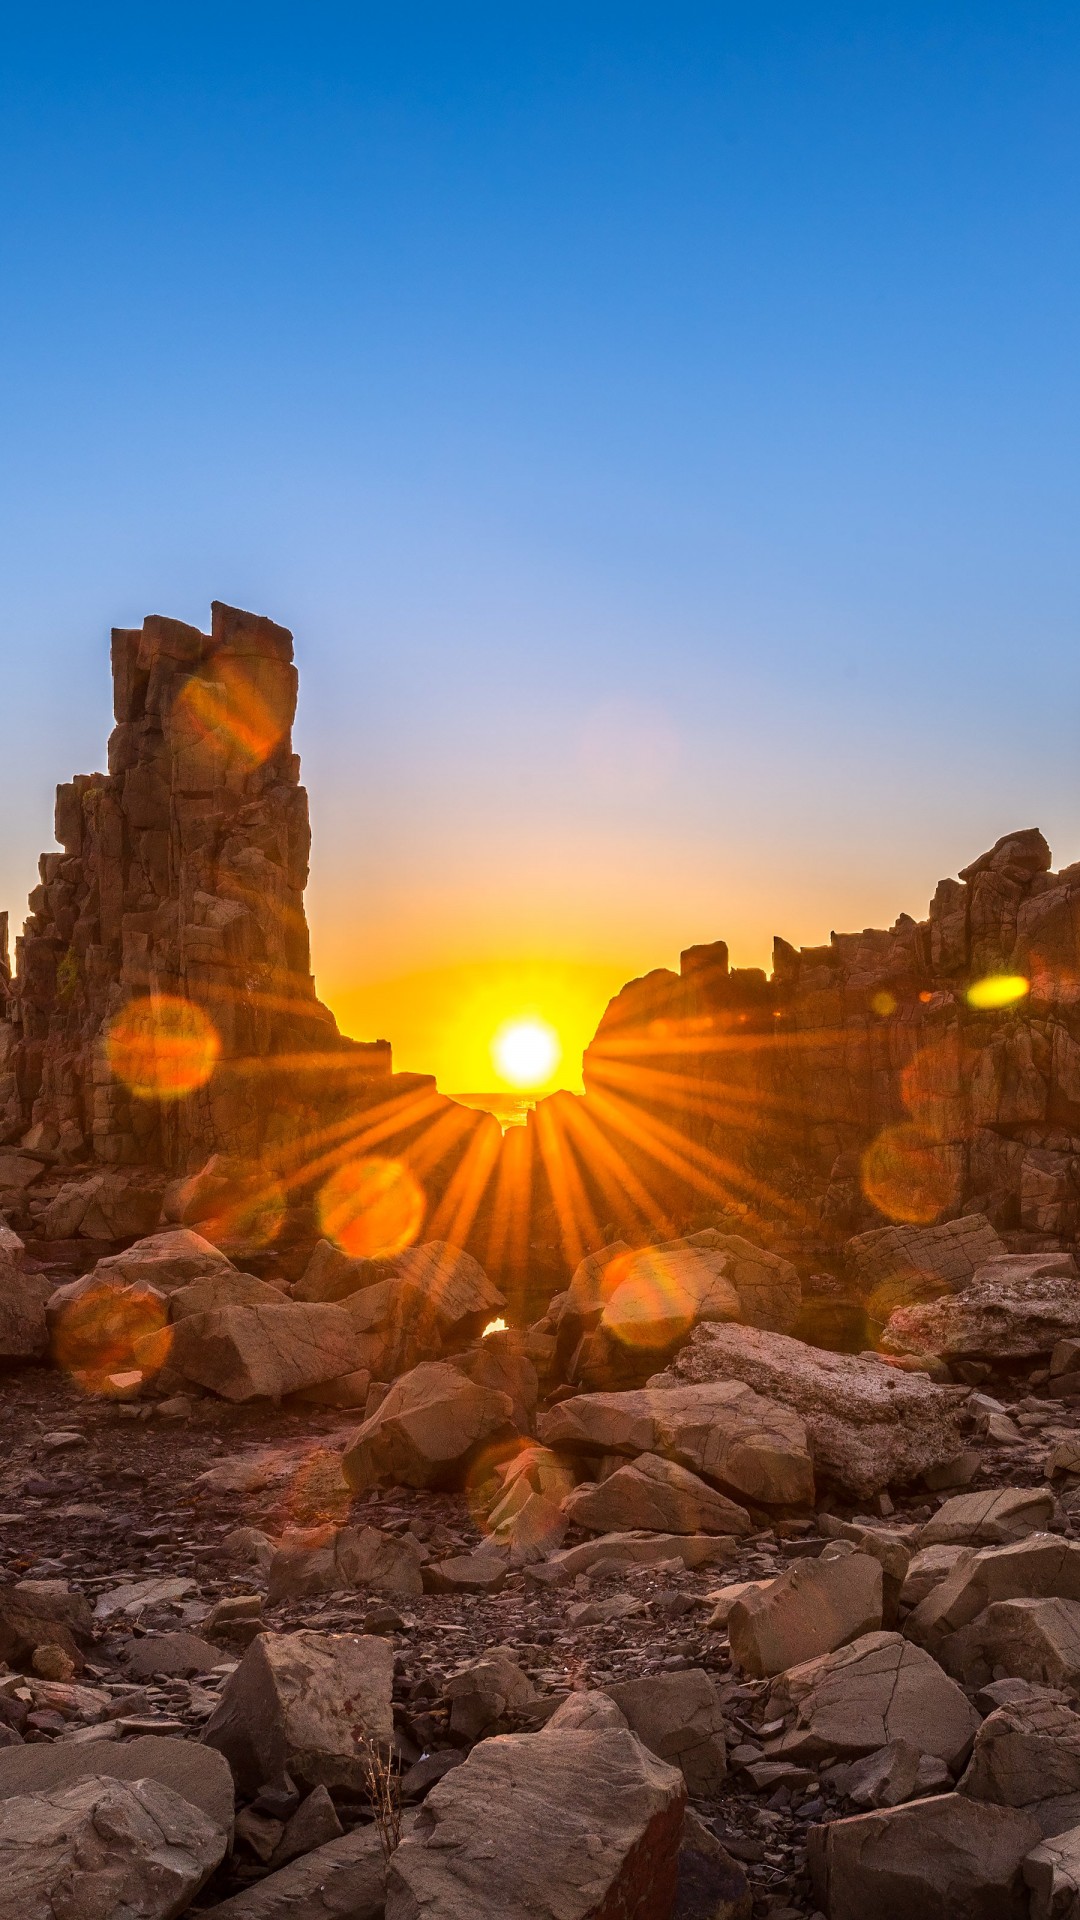 Sunrise Over Bombo Headland, Australia Wallpaper for Google Nexus 5X